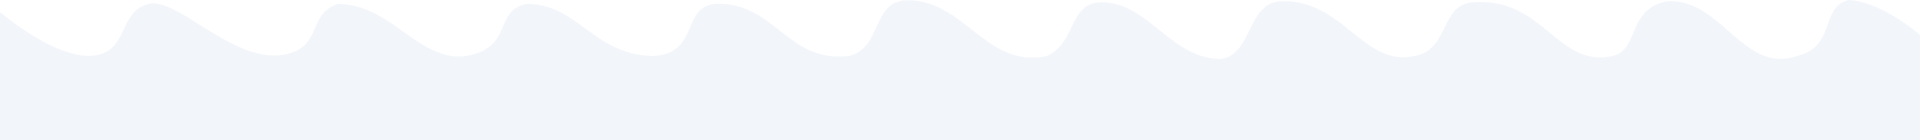 Curve Image